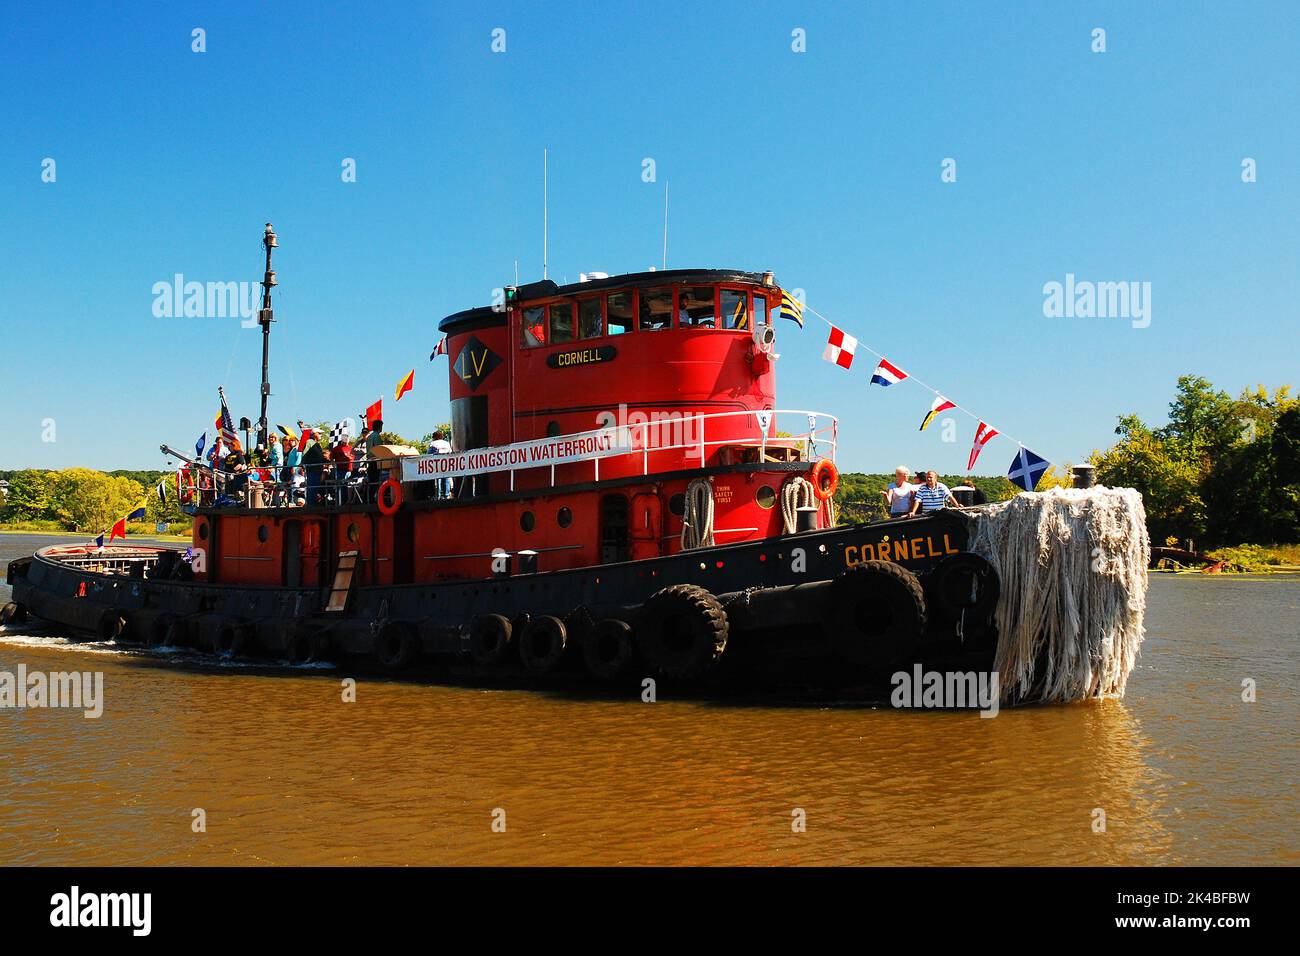 Le remorqueur rouge Cornell longe la rivière pour guider le prochain grand navire Banque D'Images